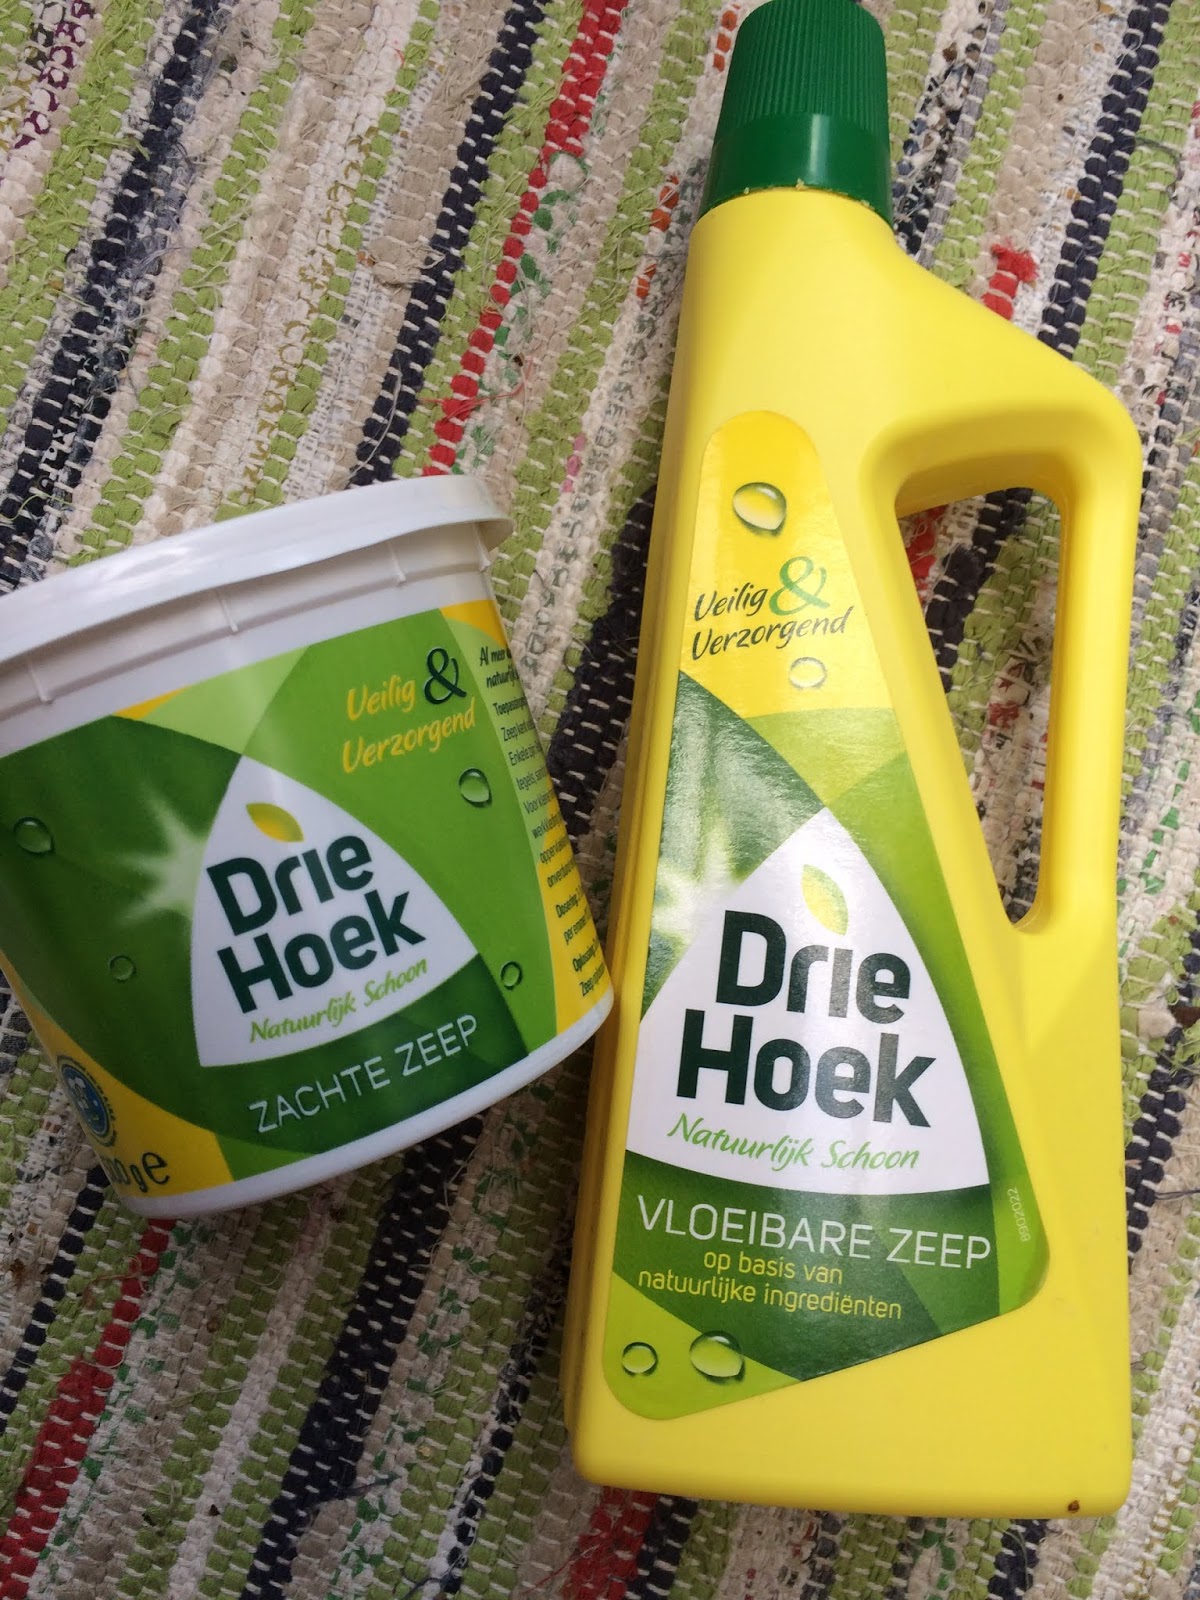 Kaal Zee verklaren Life and Lizzy♡: #Groener doen #10 #milieau vriendelijk schoonmaken #groene  zeep